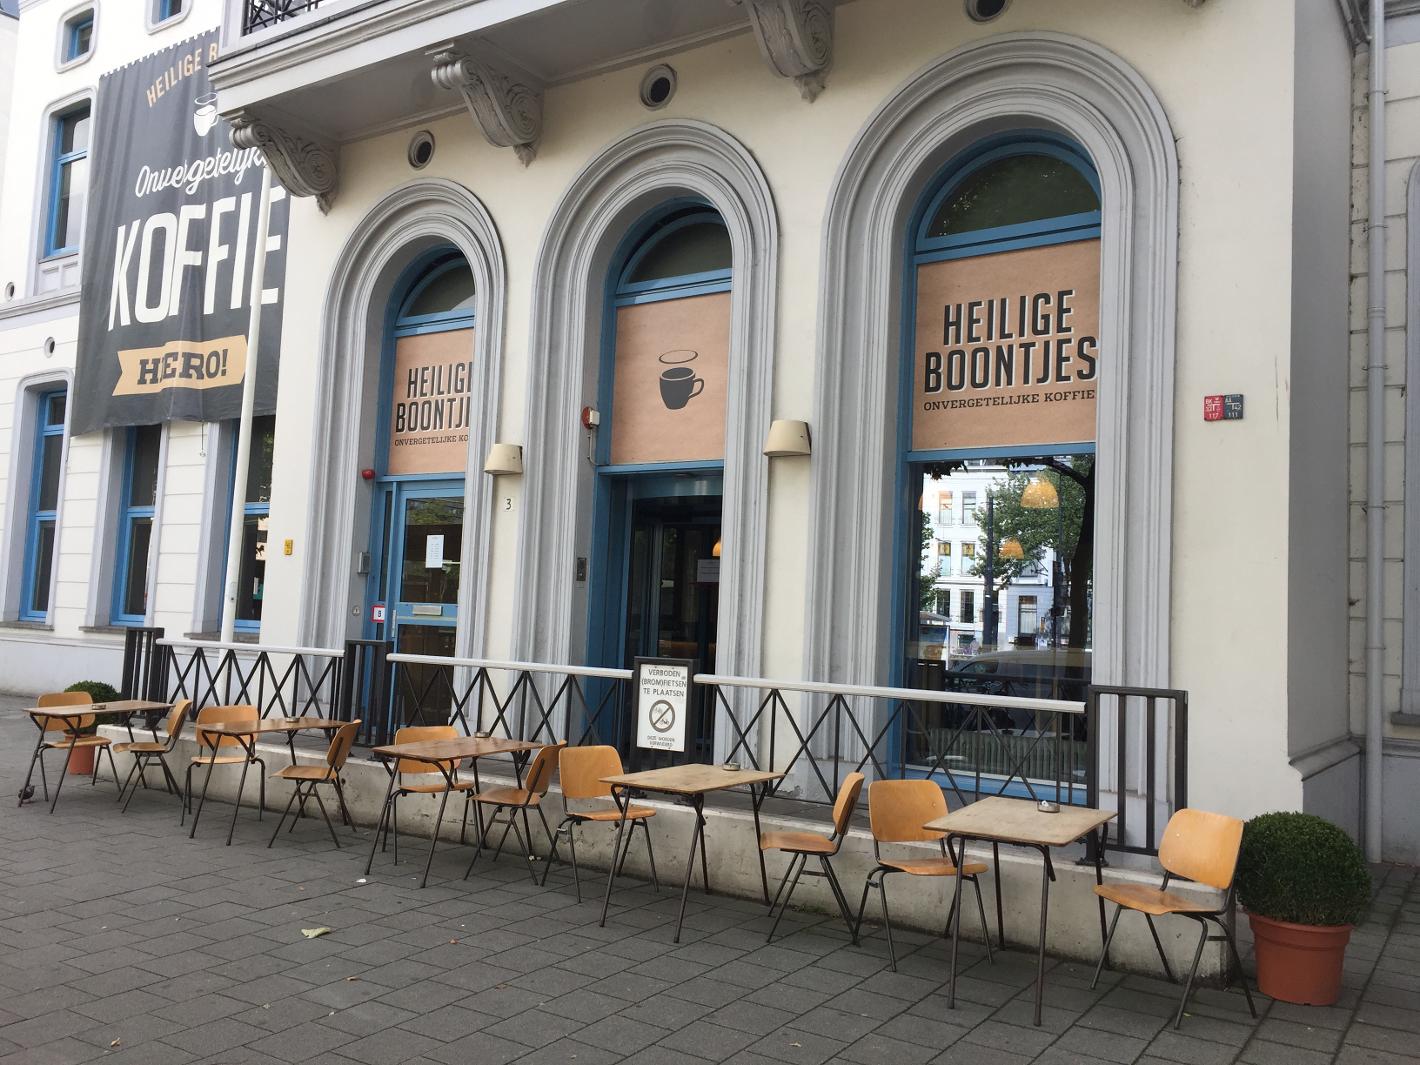 Foto Heilige Boontjes in Rotterdam, Essen & Trinken, Trinke kaffee, tee - #2